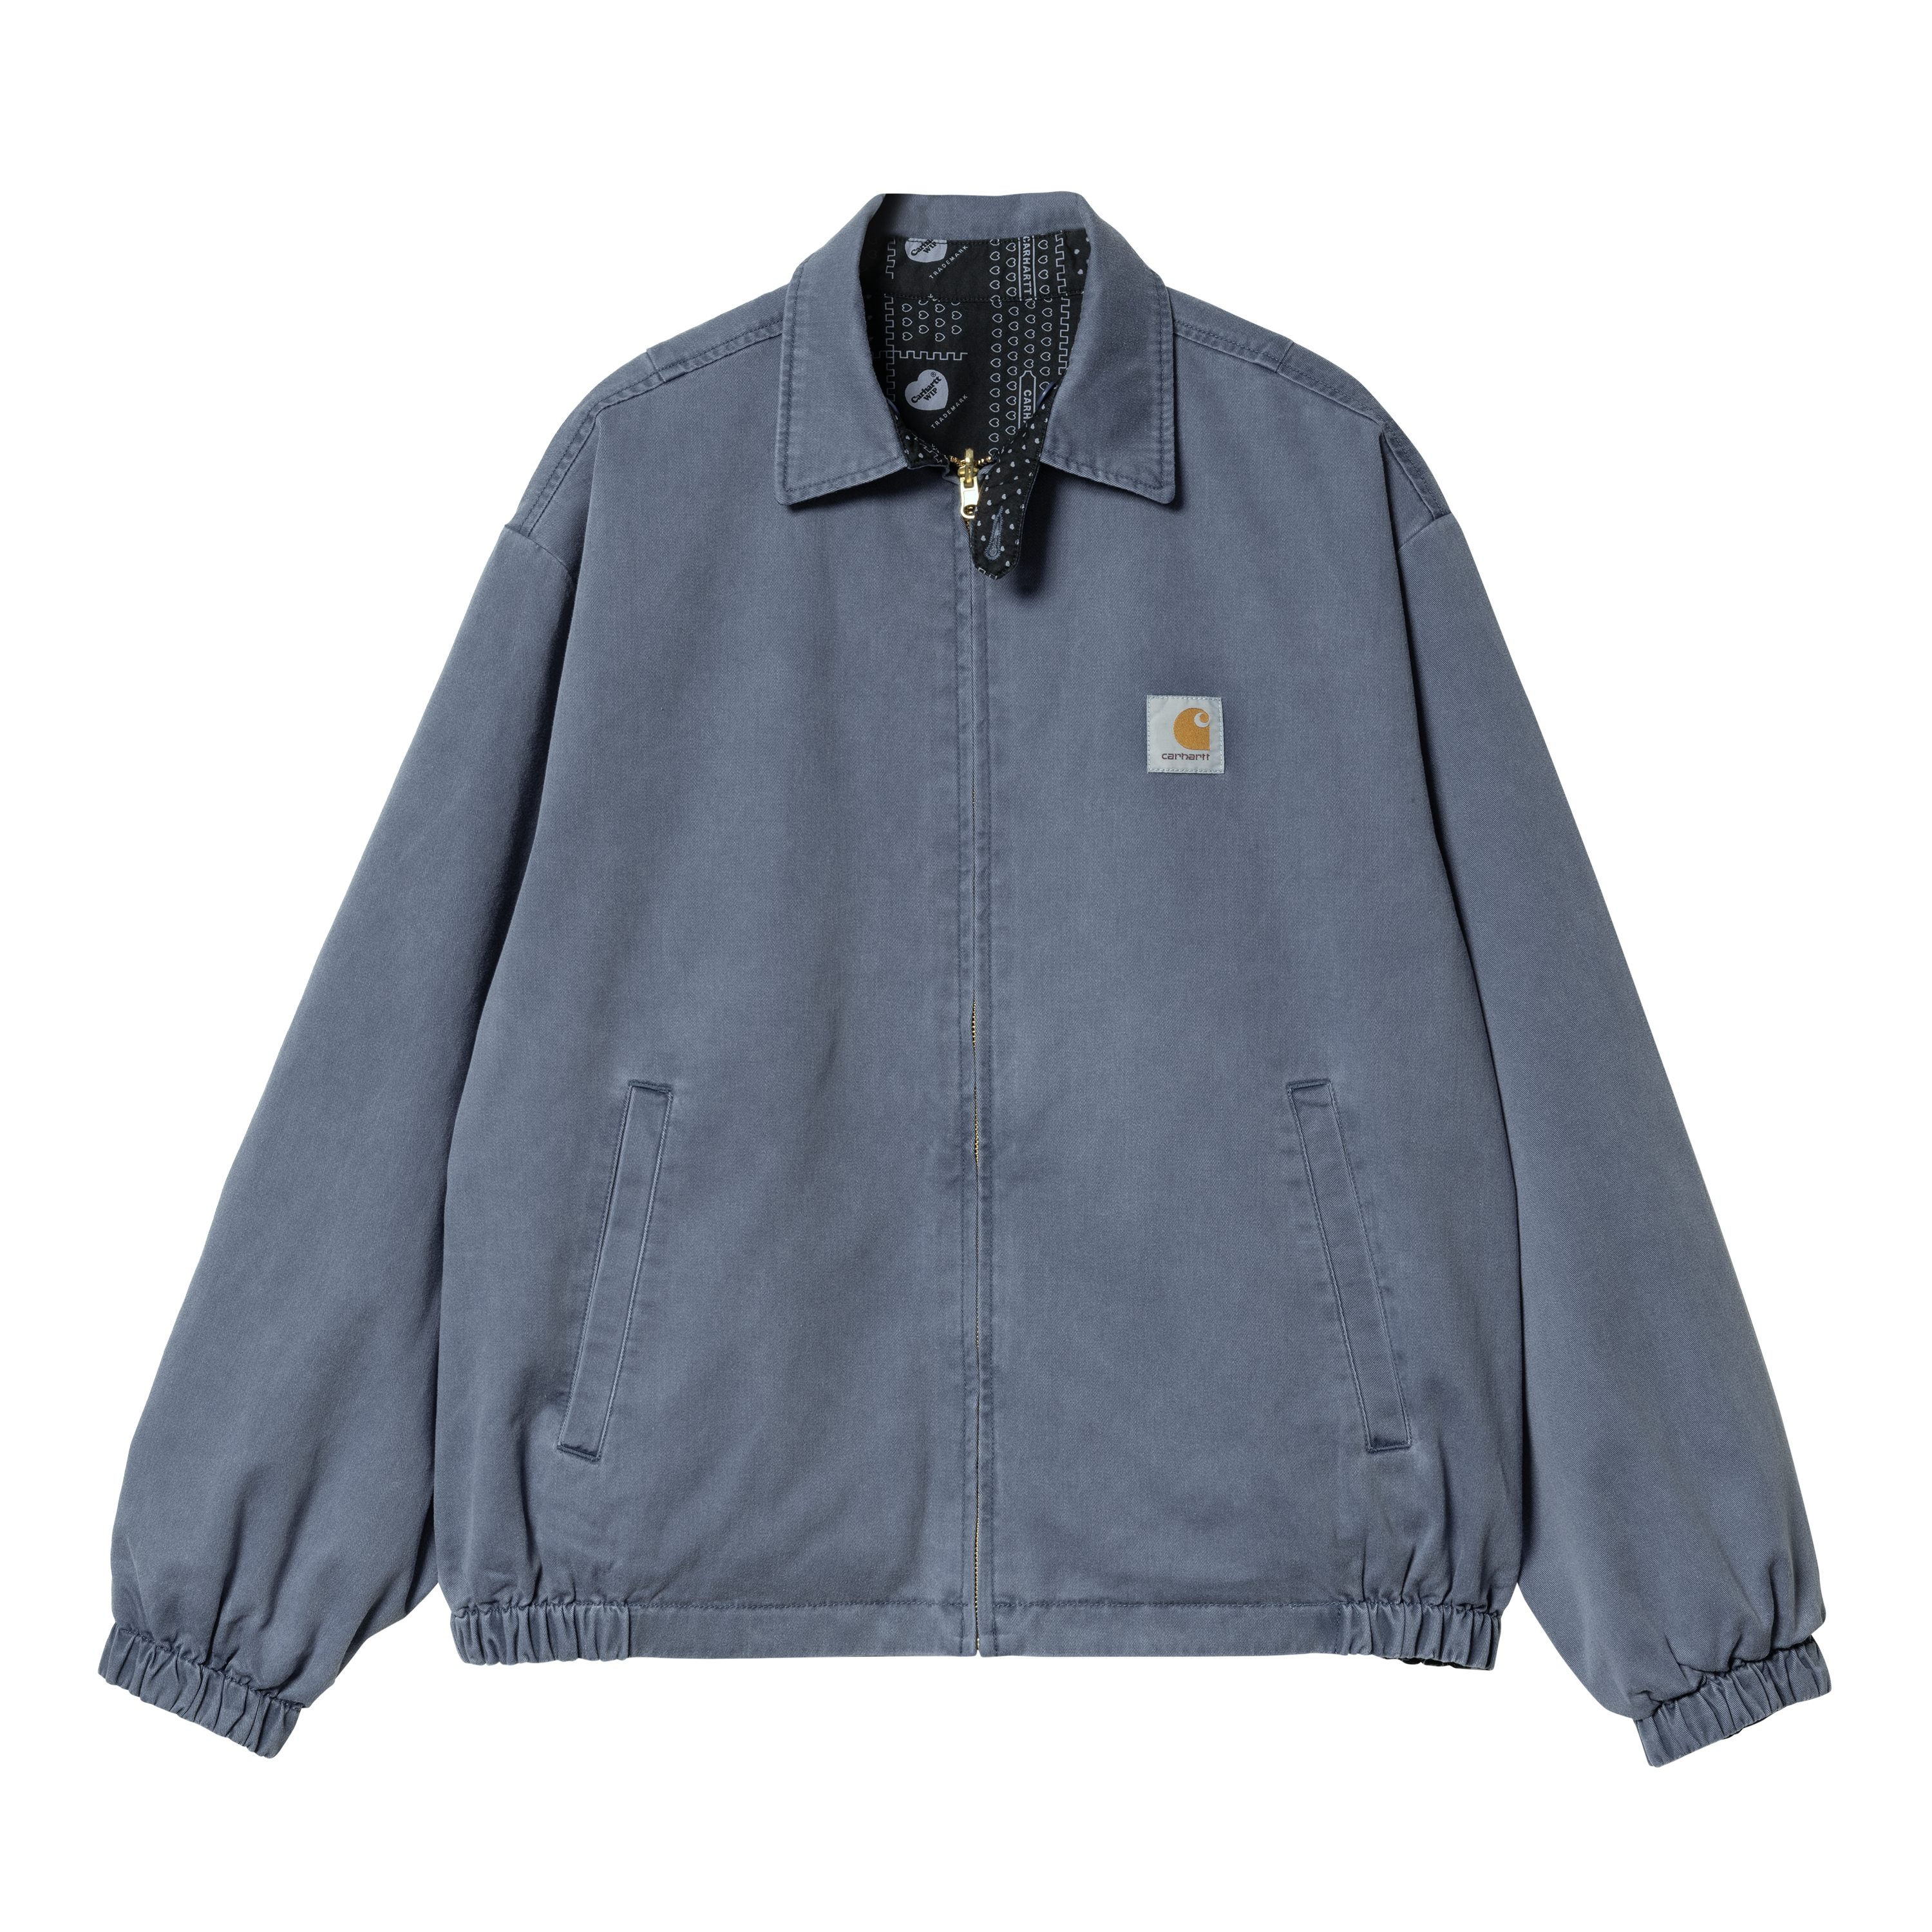 Carhartt WIP Harris Jacket in Blau